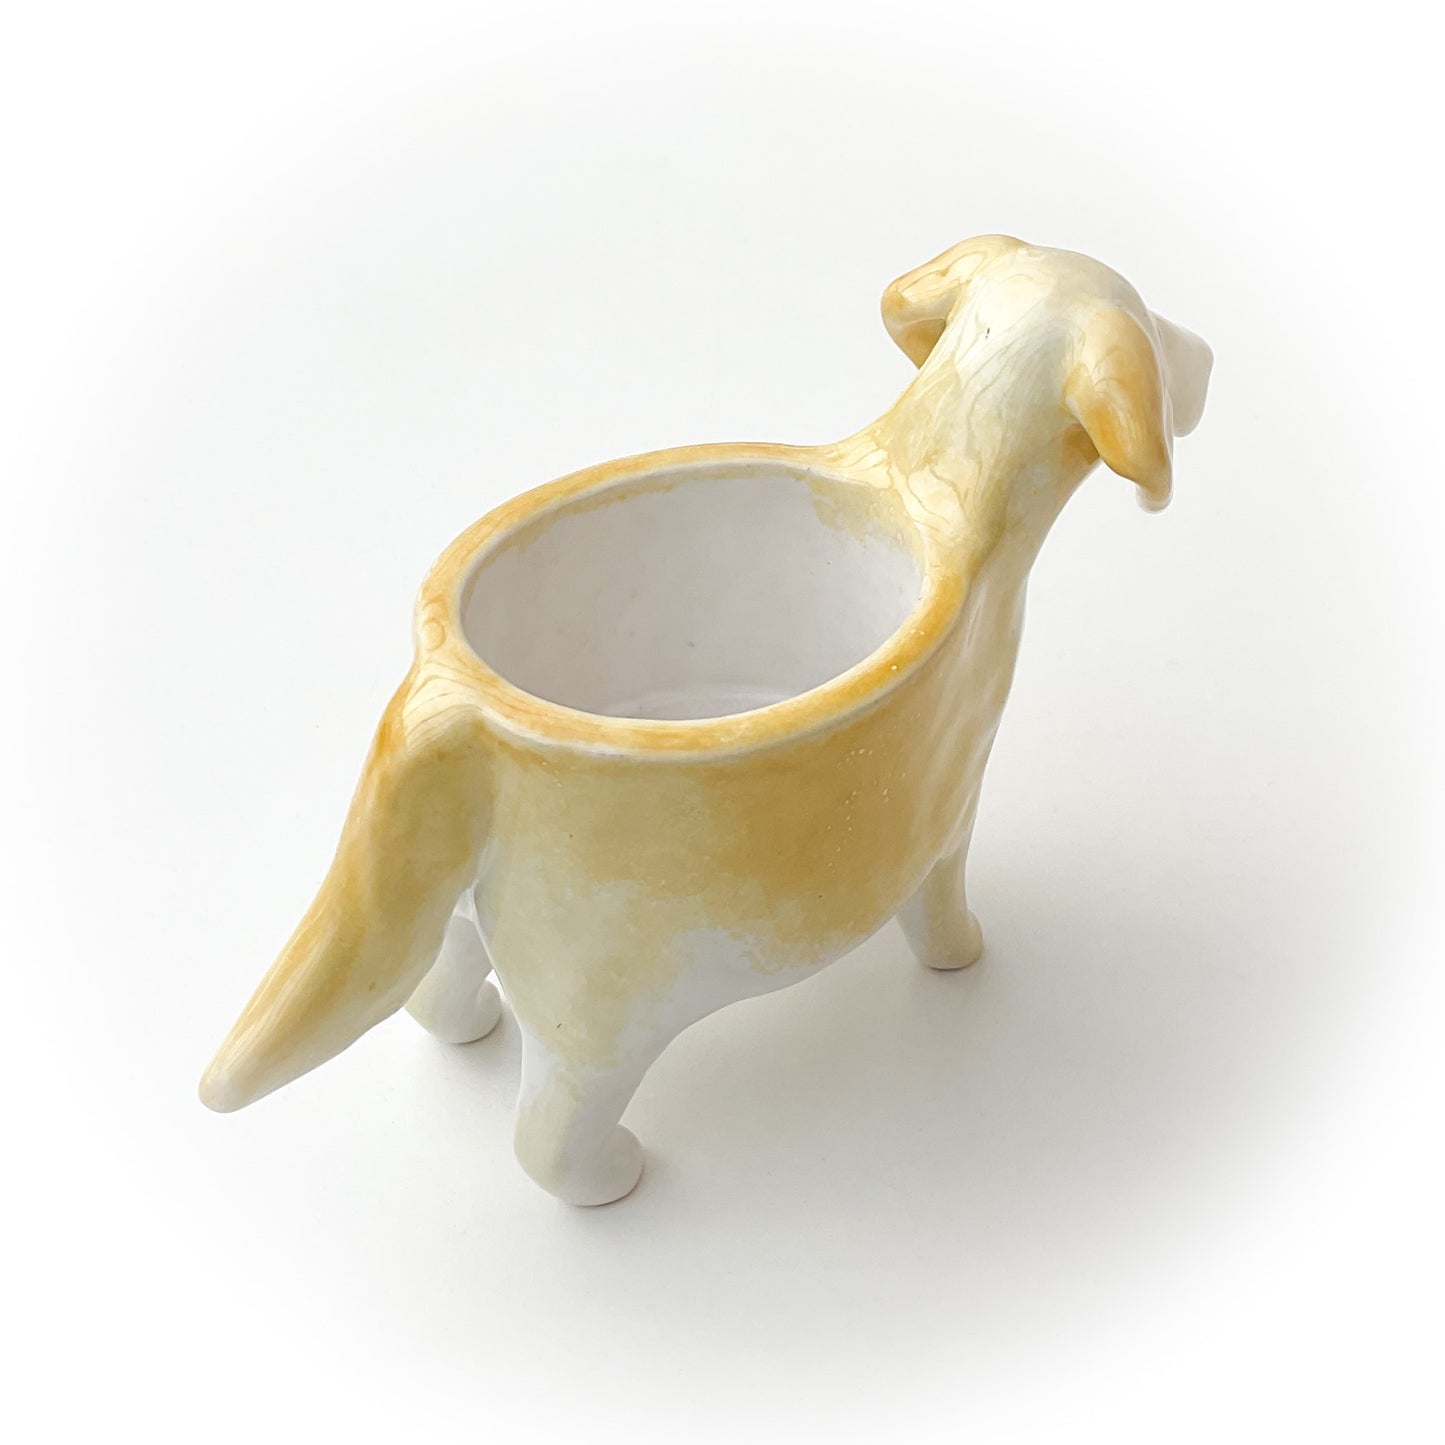 Golden Retriever Dog Planter - Ceramic Dog Plant Pot